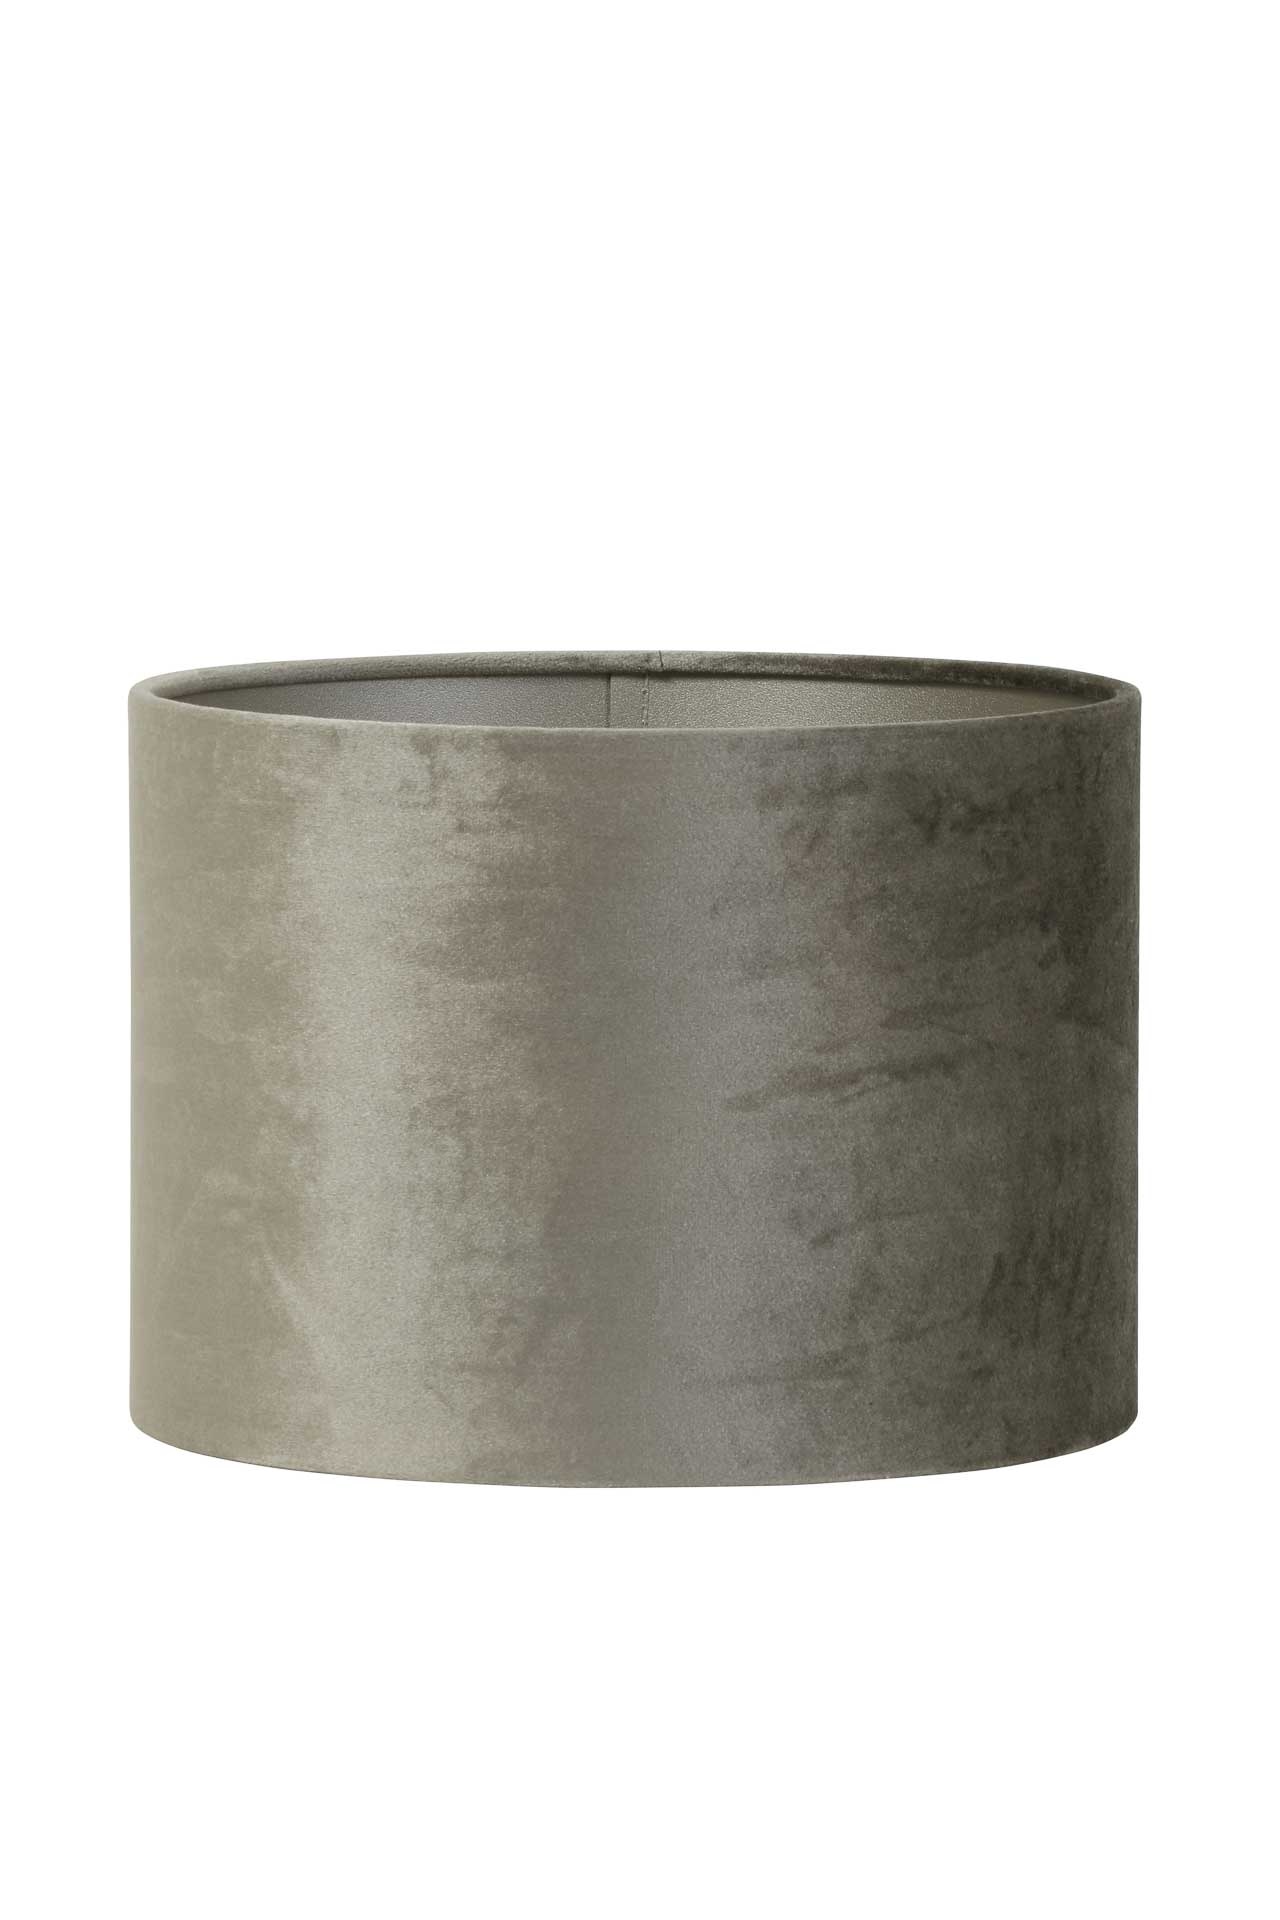 & Living Kap cilinder 18-25-25 zinc taupe | Eigenstijlwonen.nl - Eigenstijl Wonen